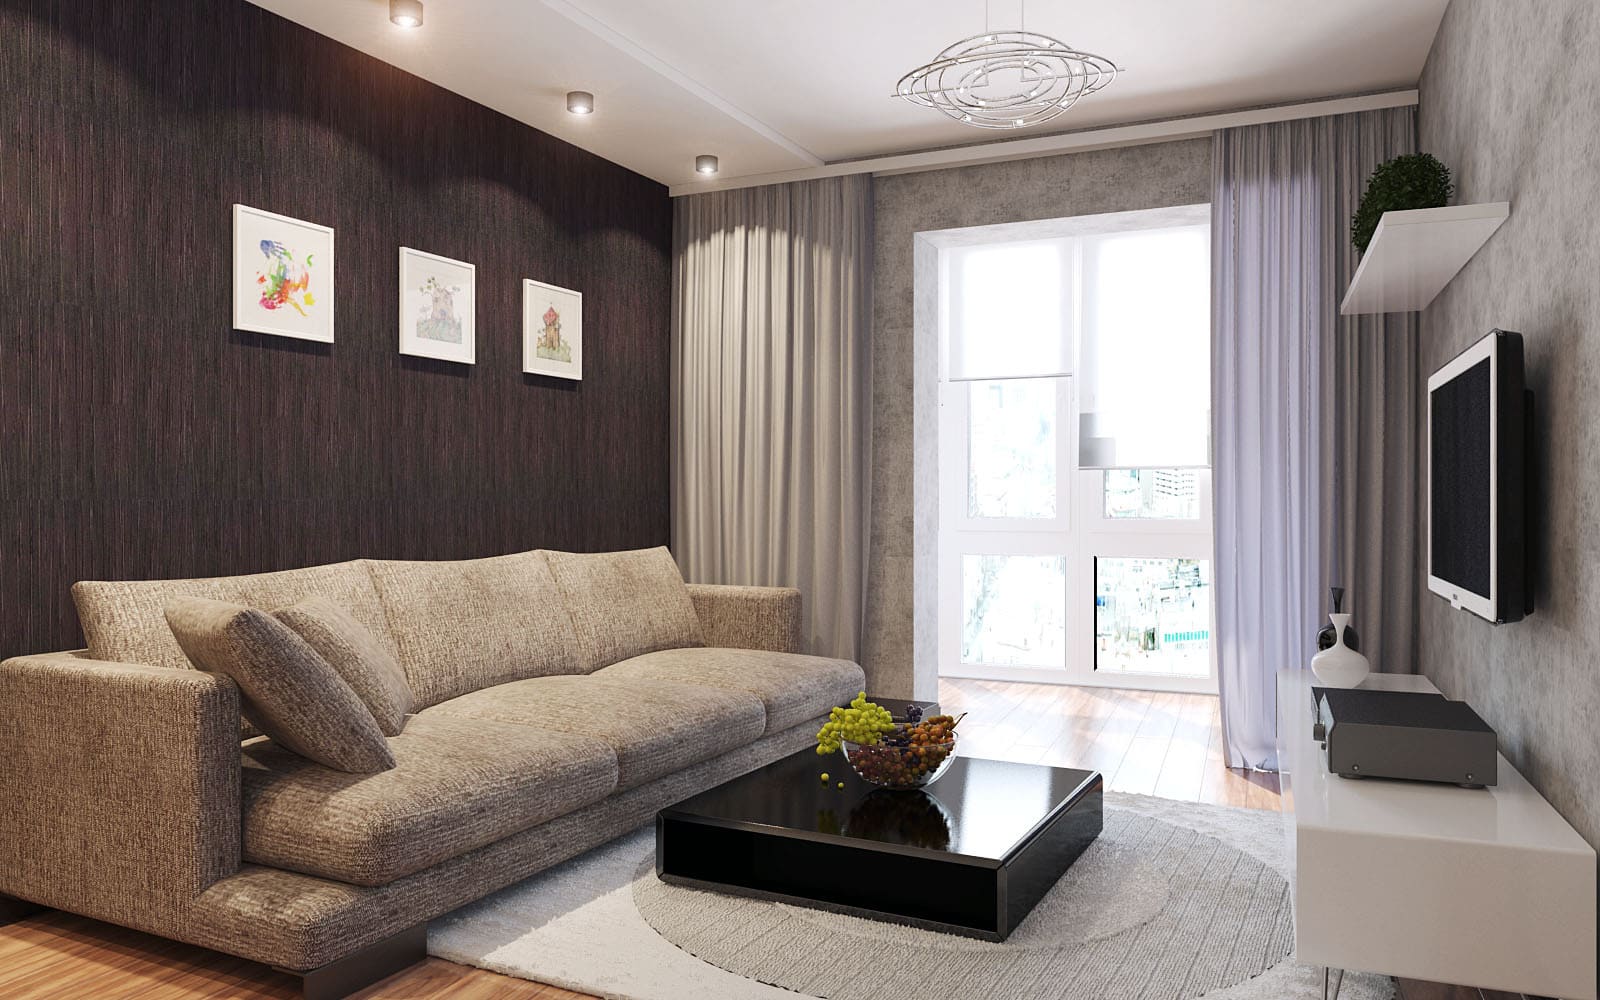 Гостиная 15 кв. м: дизайн и интерьер, современные стили комнаты в обычной квартире, реальные фото, новинки